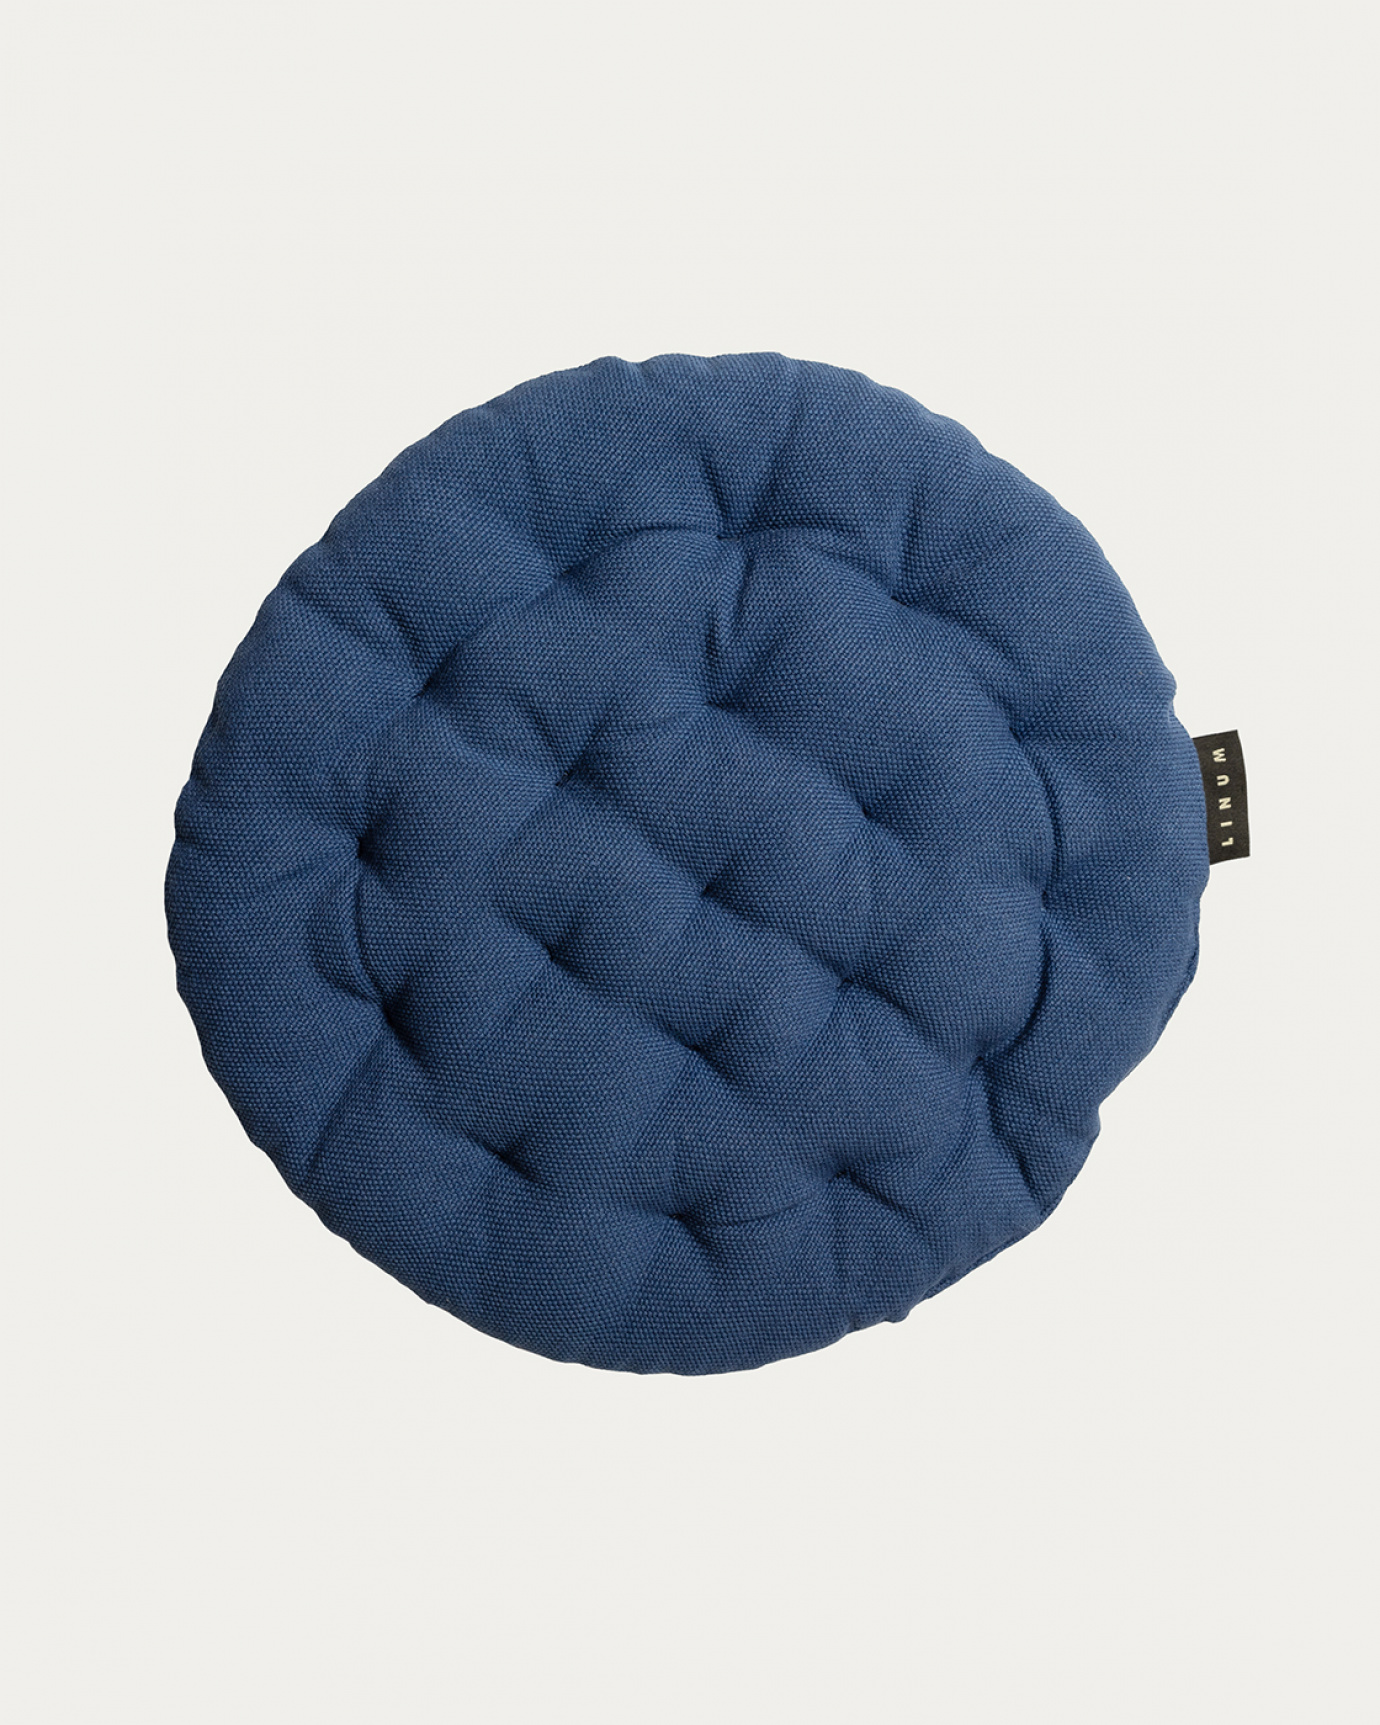 Produktbild indigoblau PEPPER Sitzkissen aus weicher Baumwolle mit Füllung aus recyceltem Polyester von LINUM DESIGN. Größe ø37 cm.